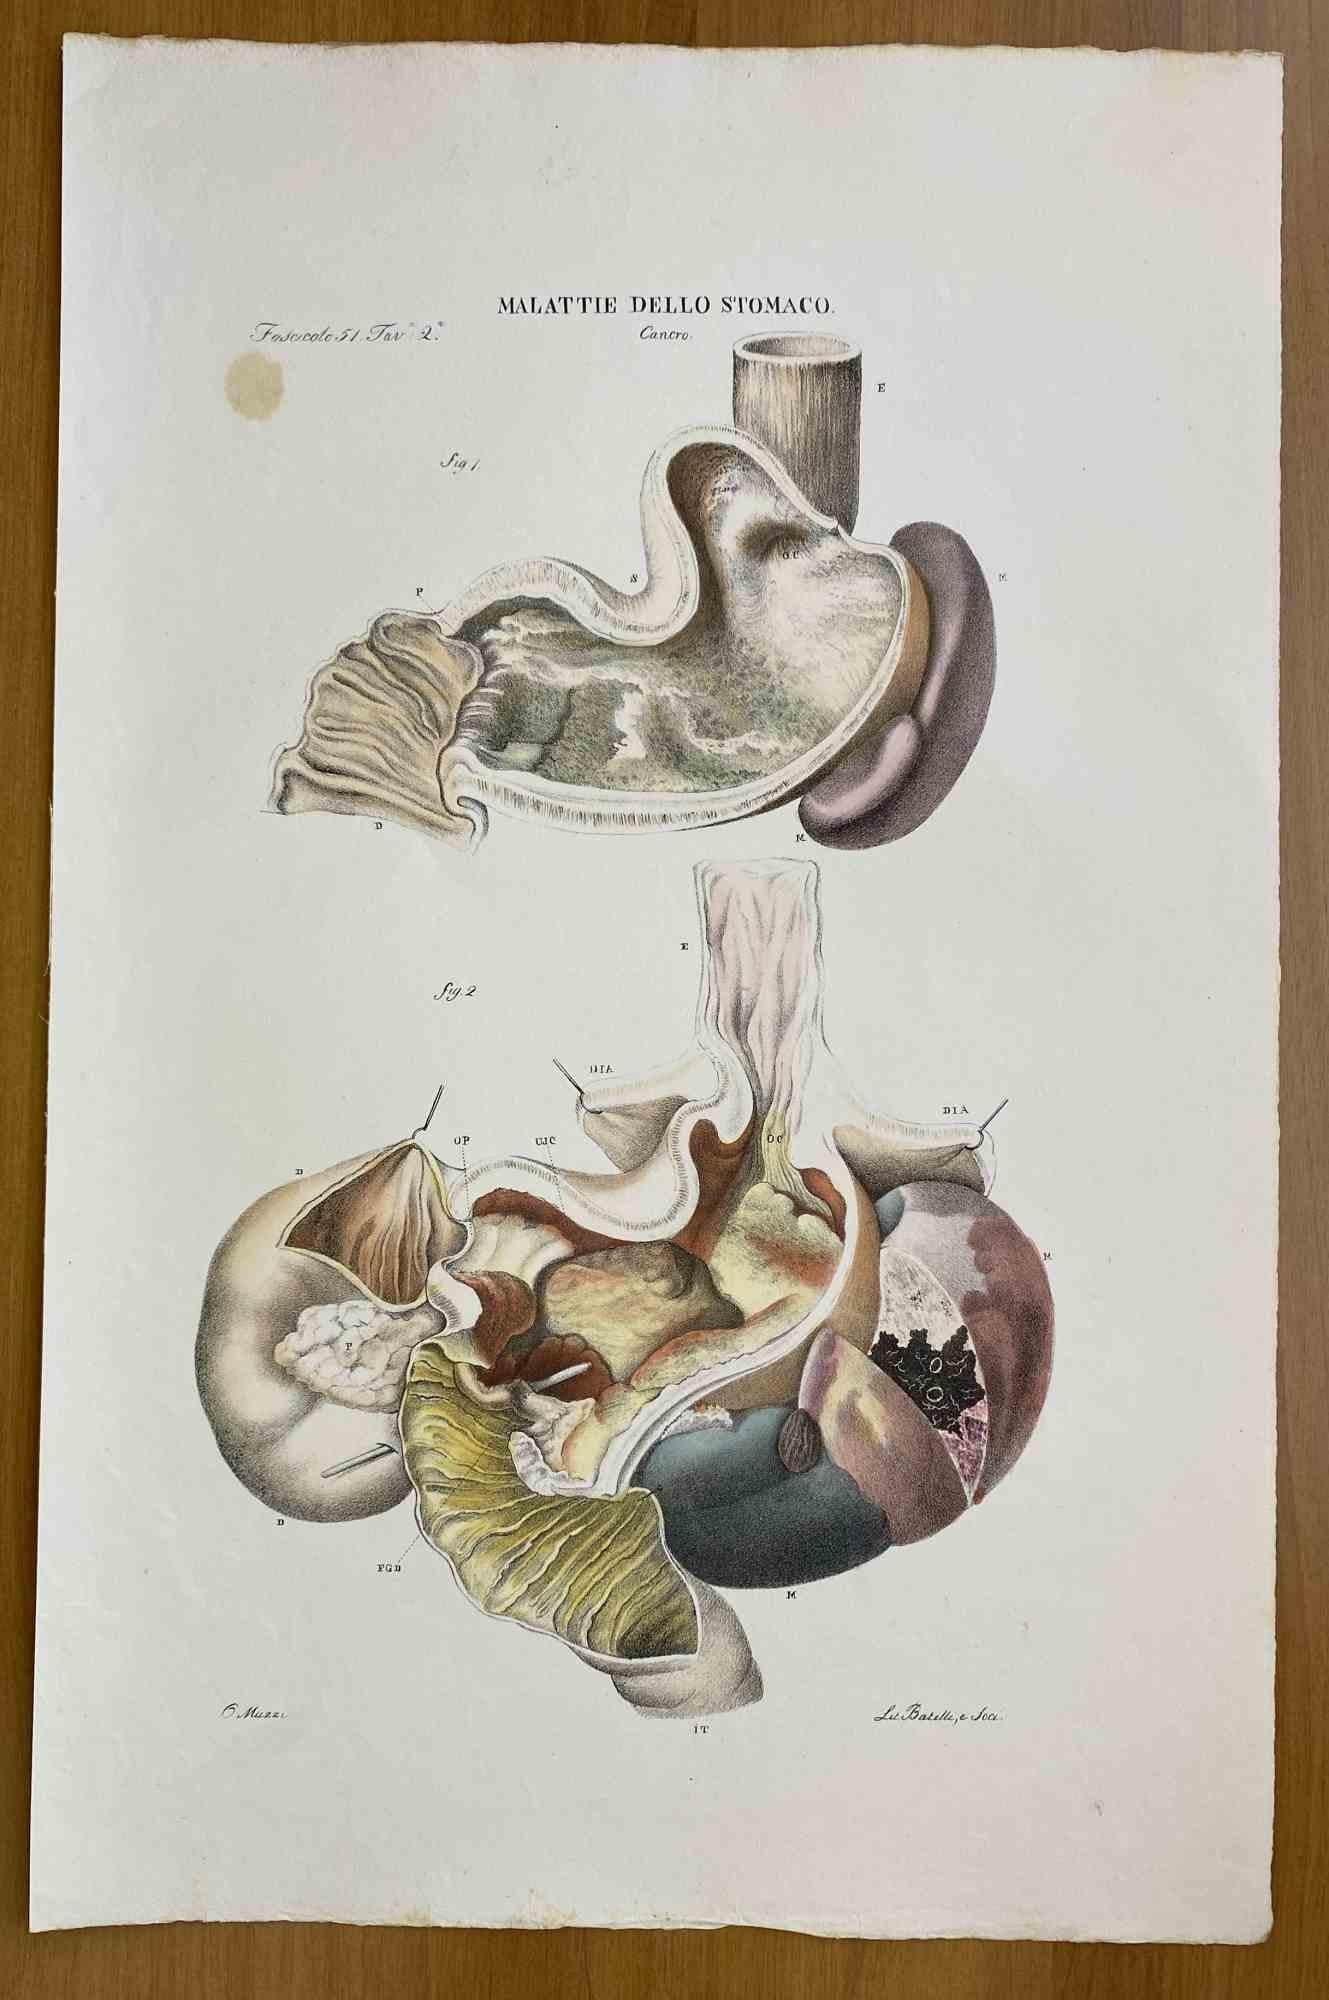 Stomach Diseases ist eine handkolorierte Lithographie von Ottavio Muzzi für die Ausgabe von Antoine Chazal, Human Anatomy, Printers Batelli and Ridolfi, 1843.

Das Werk gehört zum Atlante generale della anatomia patologica del corpo umano von Jean